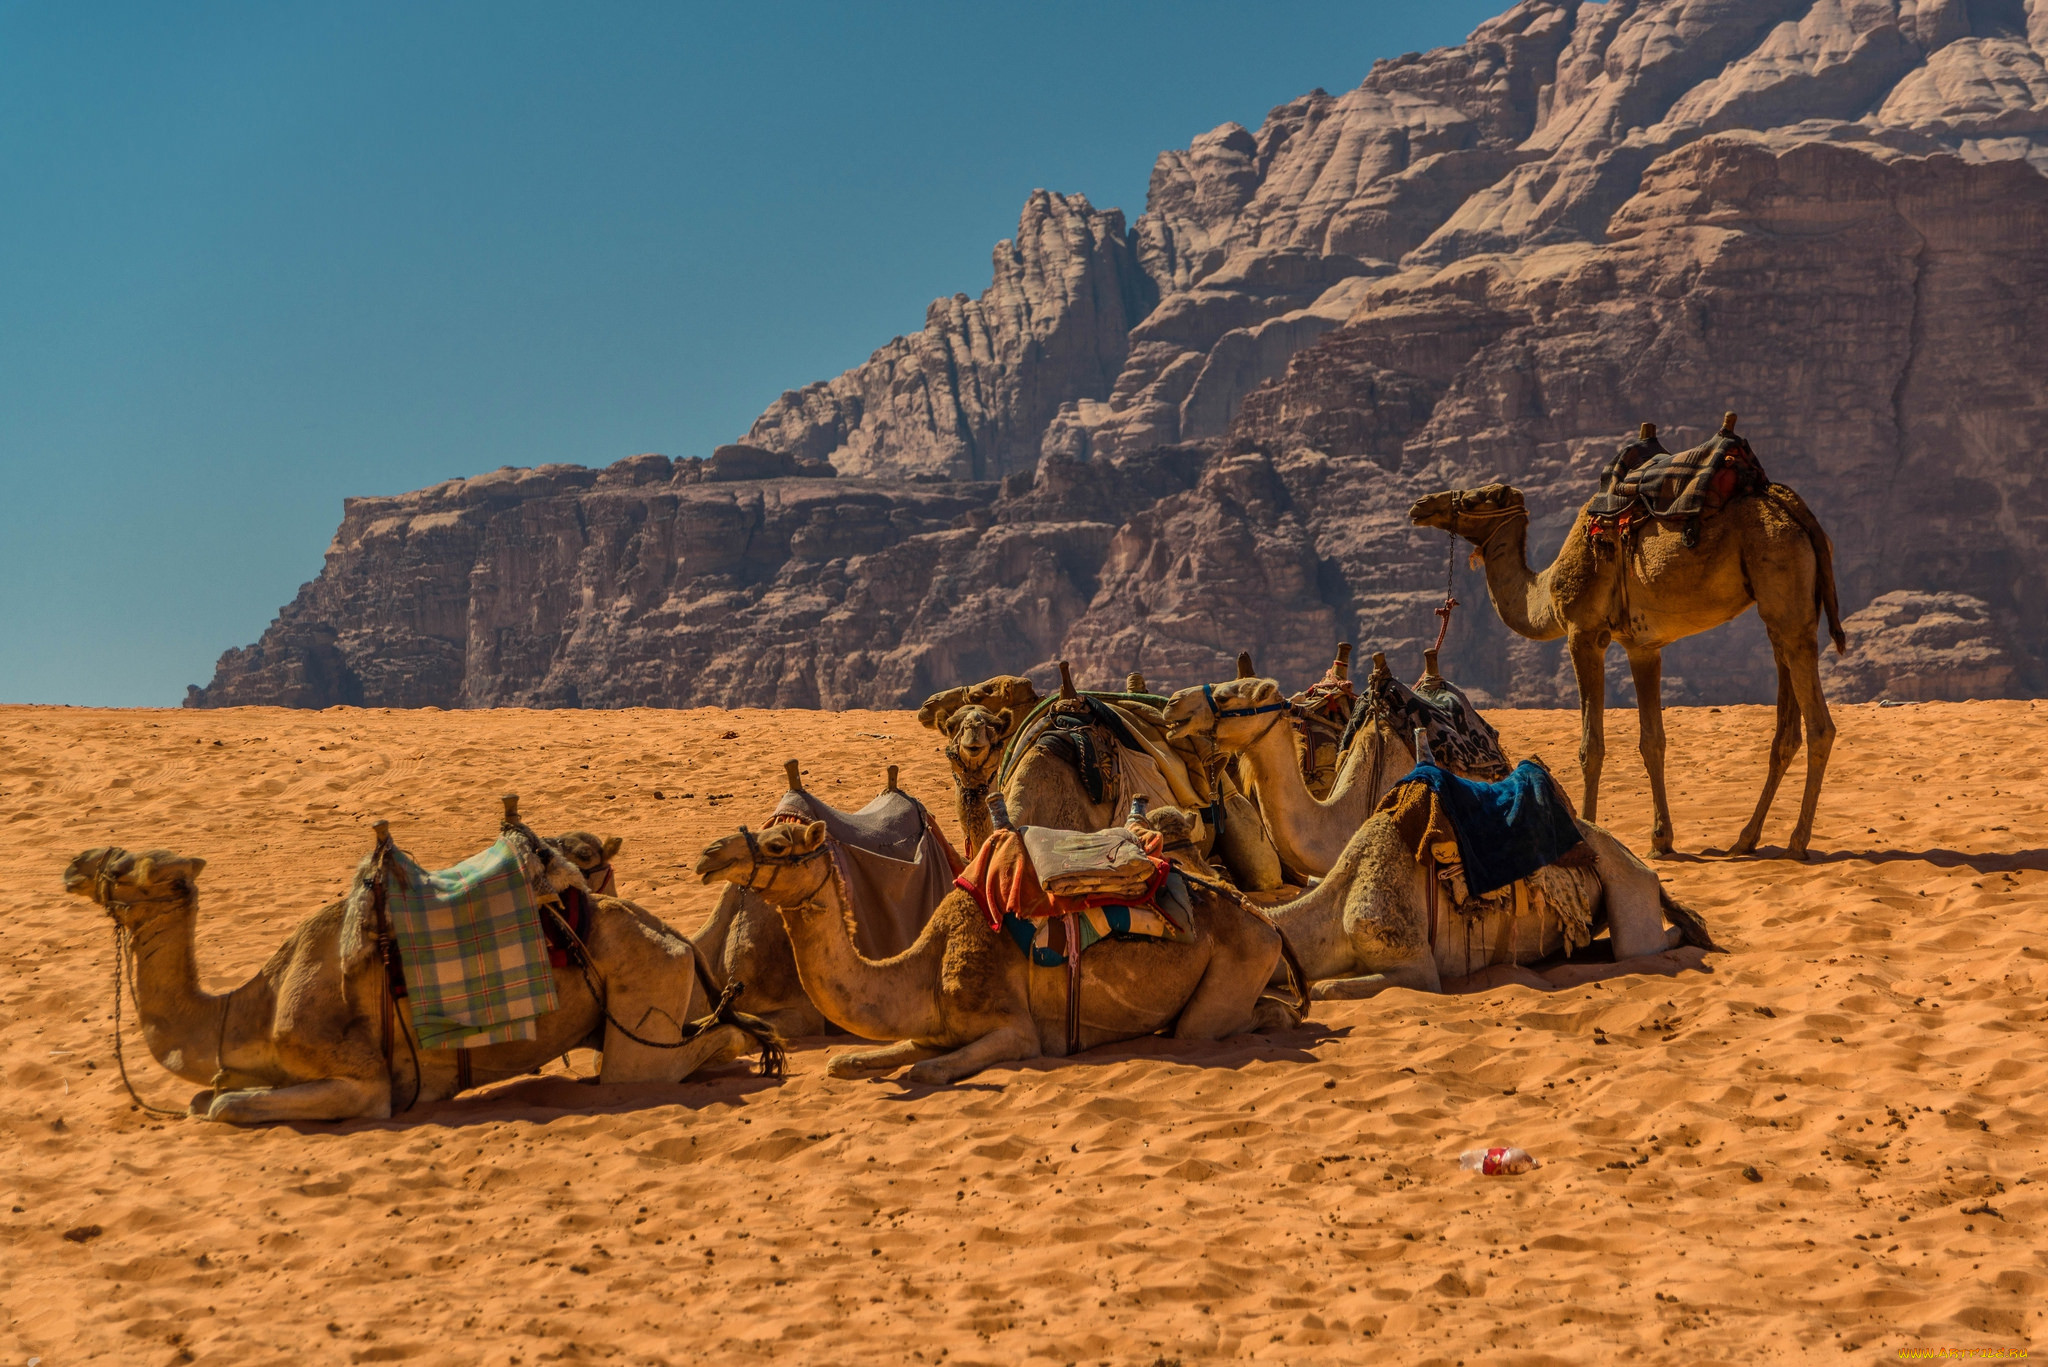 Караван рядом. Верблюд Караван пустыни. Мехари верблюд. Караван с верблюдами в пустыне. Караван верблюдов в пустыне.